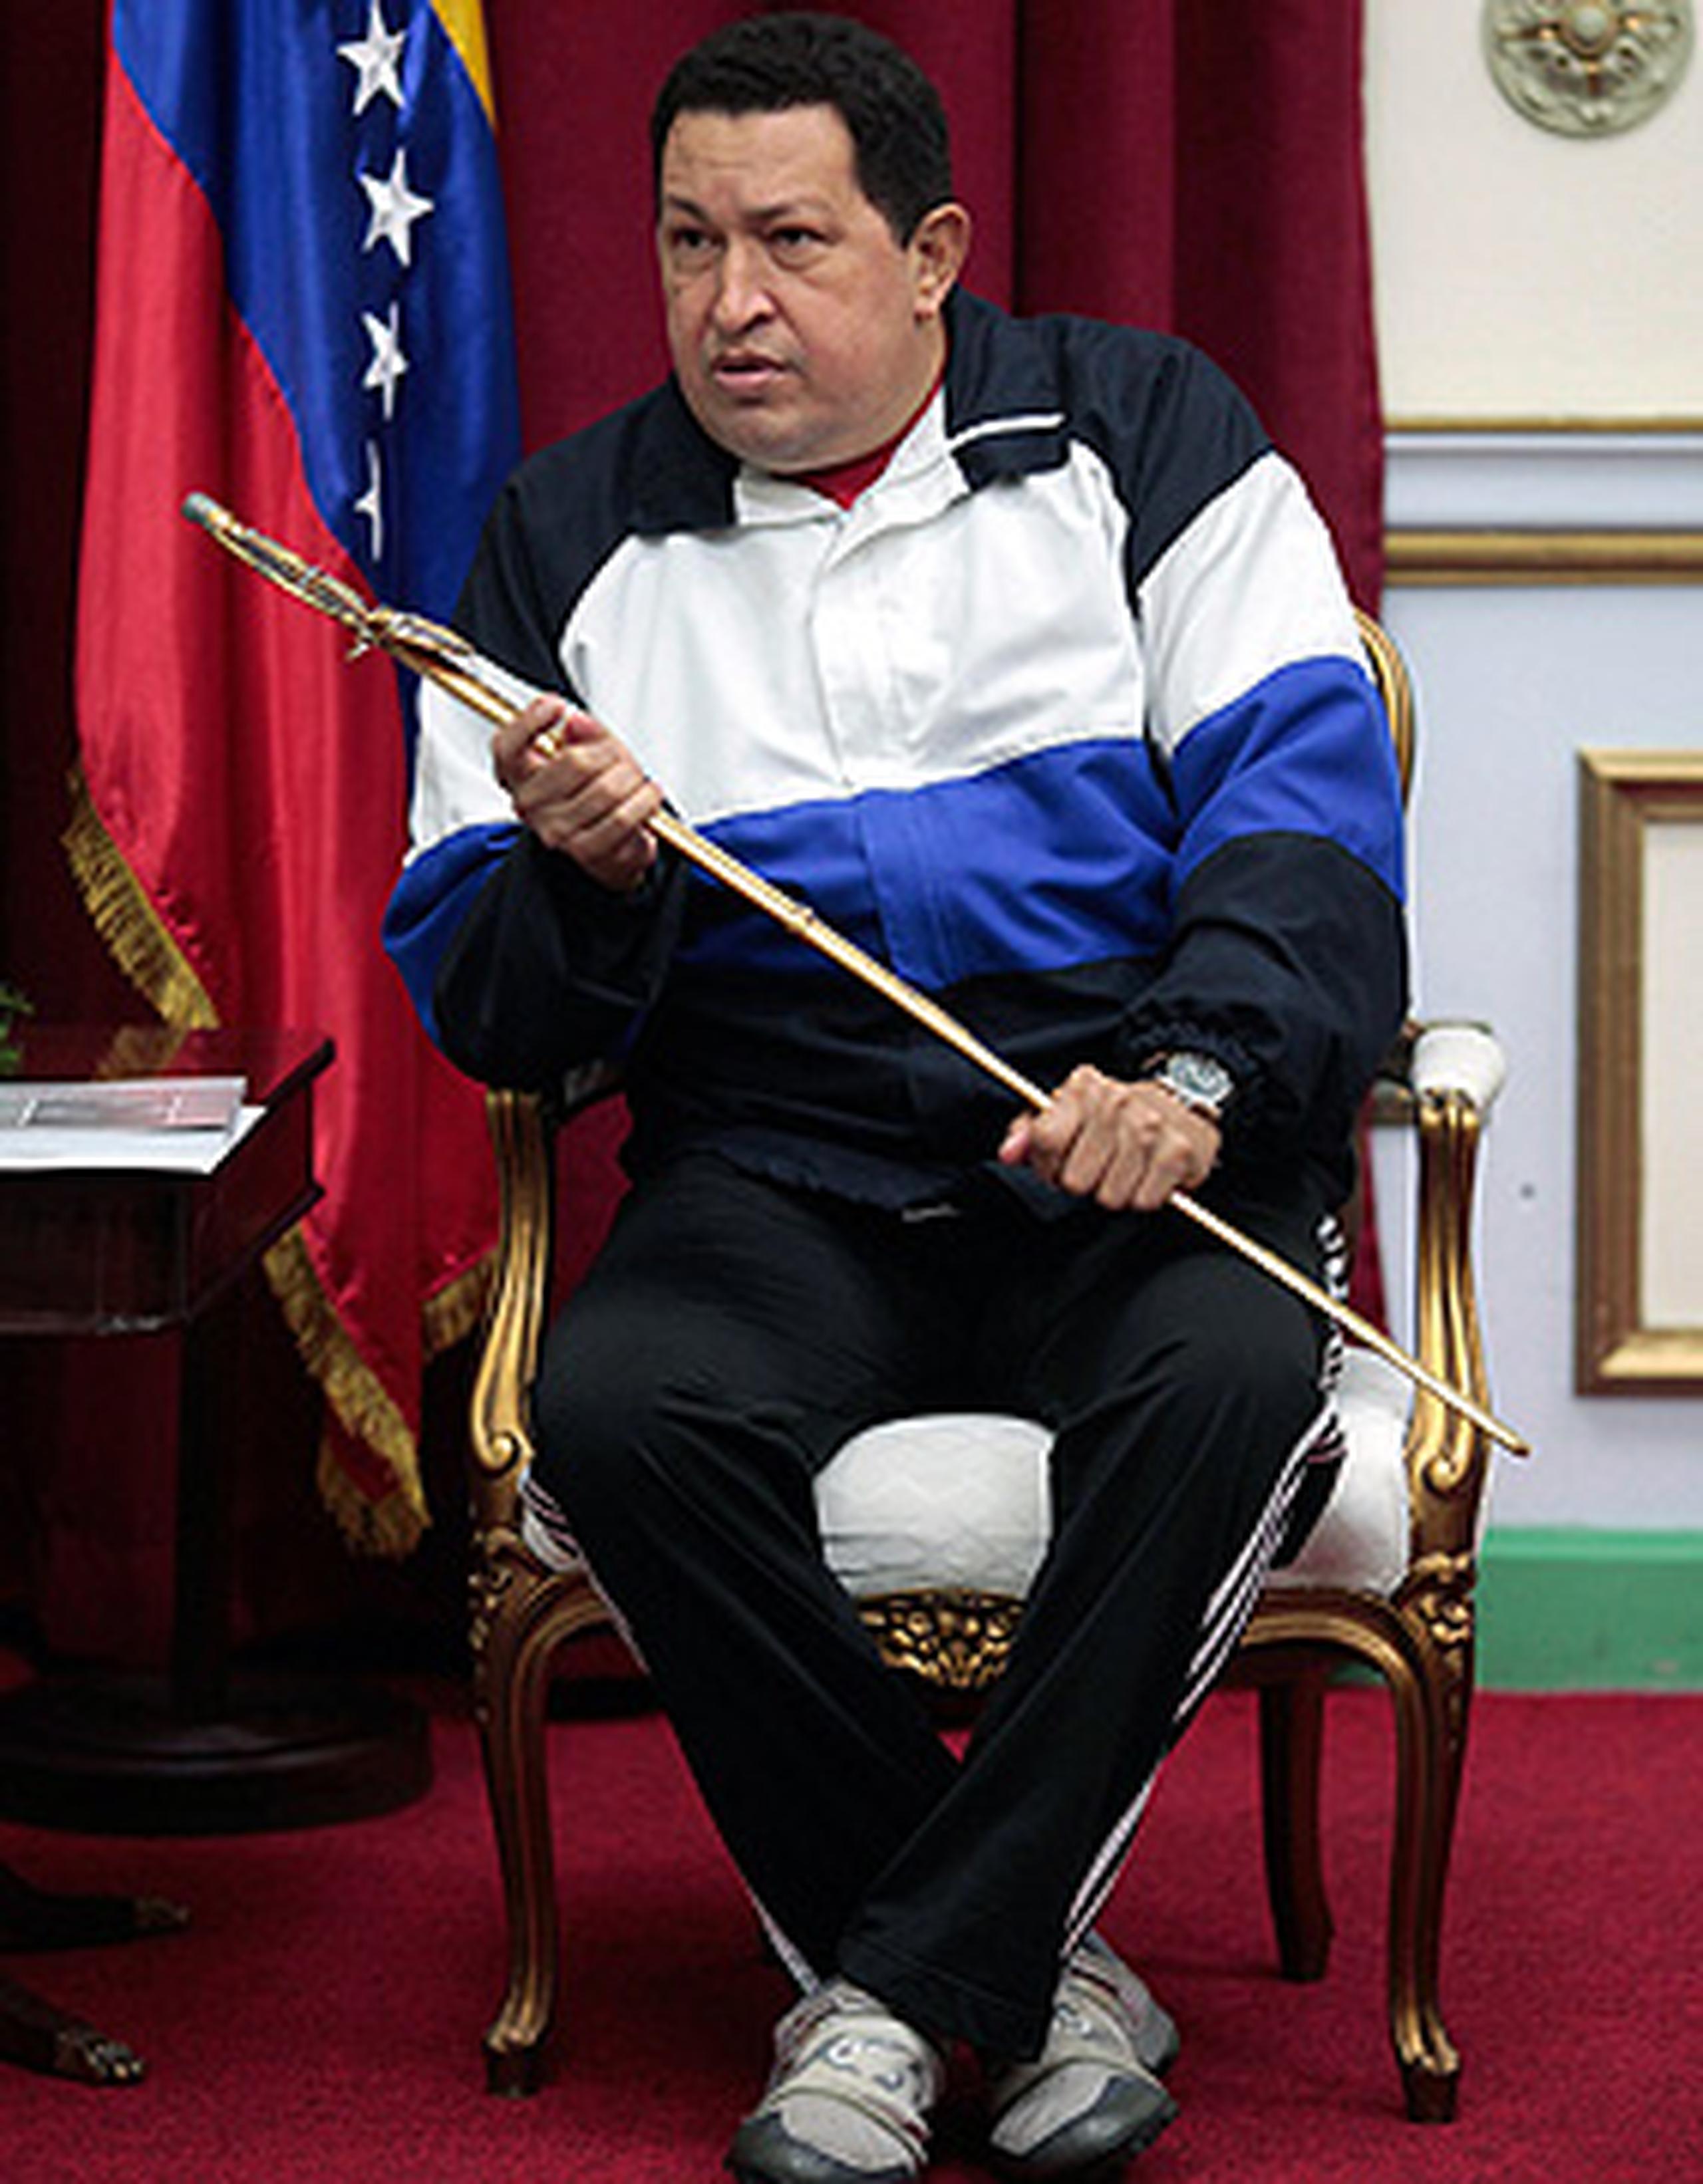 El presidente venezolano Hugo Chávez ha sido sometido a cuatro intervenciones quirúrgicas, quimioterapia y radiación por cáncer desde junio del 2011. (Archivo)